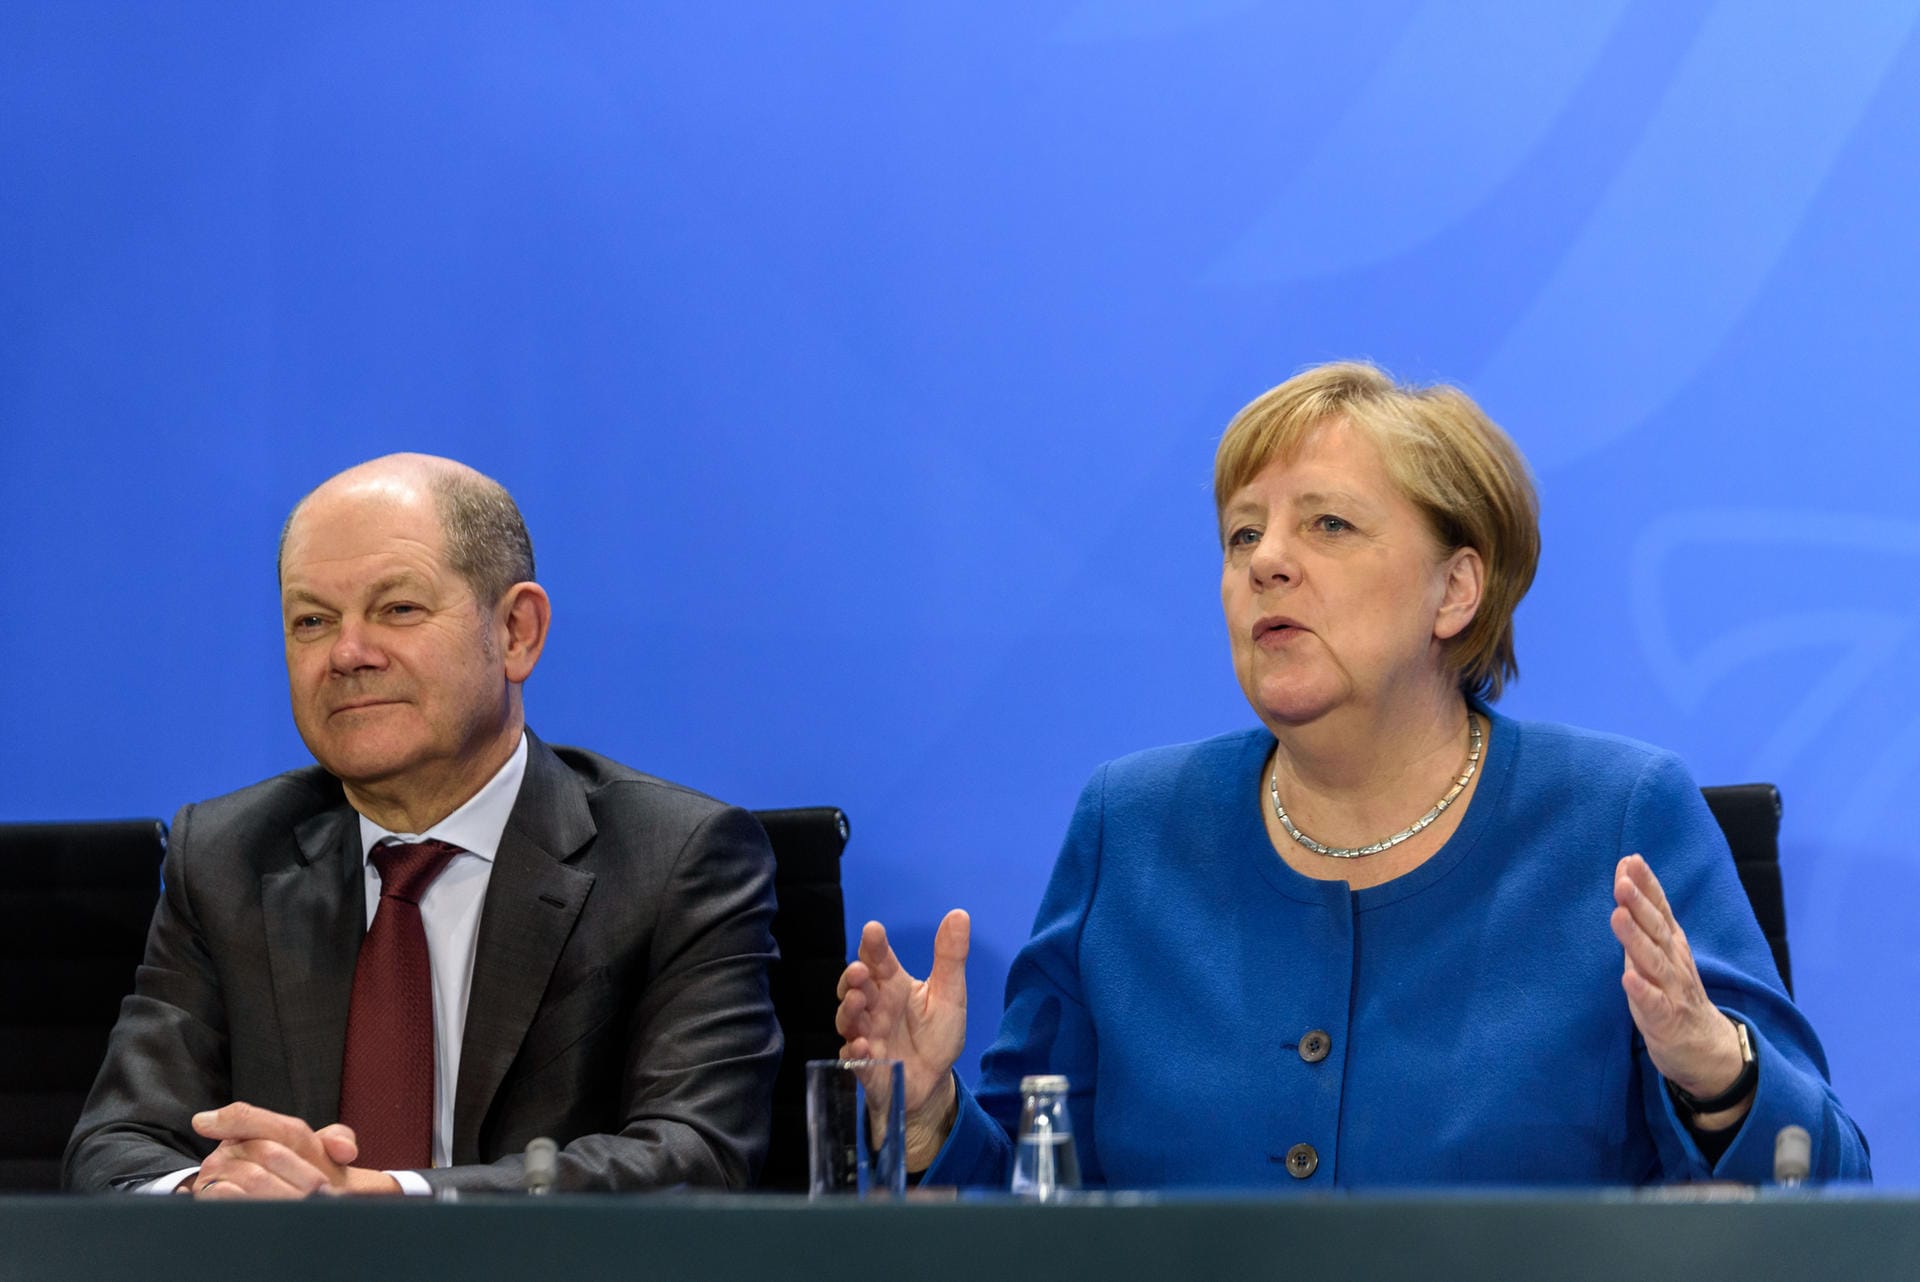 An der Seite von Angela Merkel: Olaf Scholz ist nicht nur Bundesminister der Finanzen, sondern auch Stellvertreter der Bundeskanzlerin. Im Wahlkampf wurde ihm nachgesagt, die Kanzlerin imitieren zu wollen. Auf der Titelseite des Magazins der "Süddeutschen Zeitung" posierte er mit der Merkelraute.